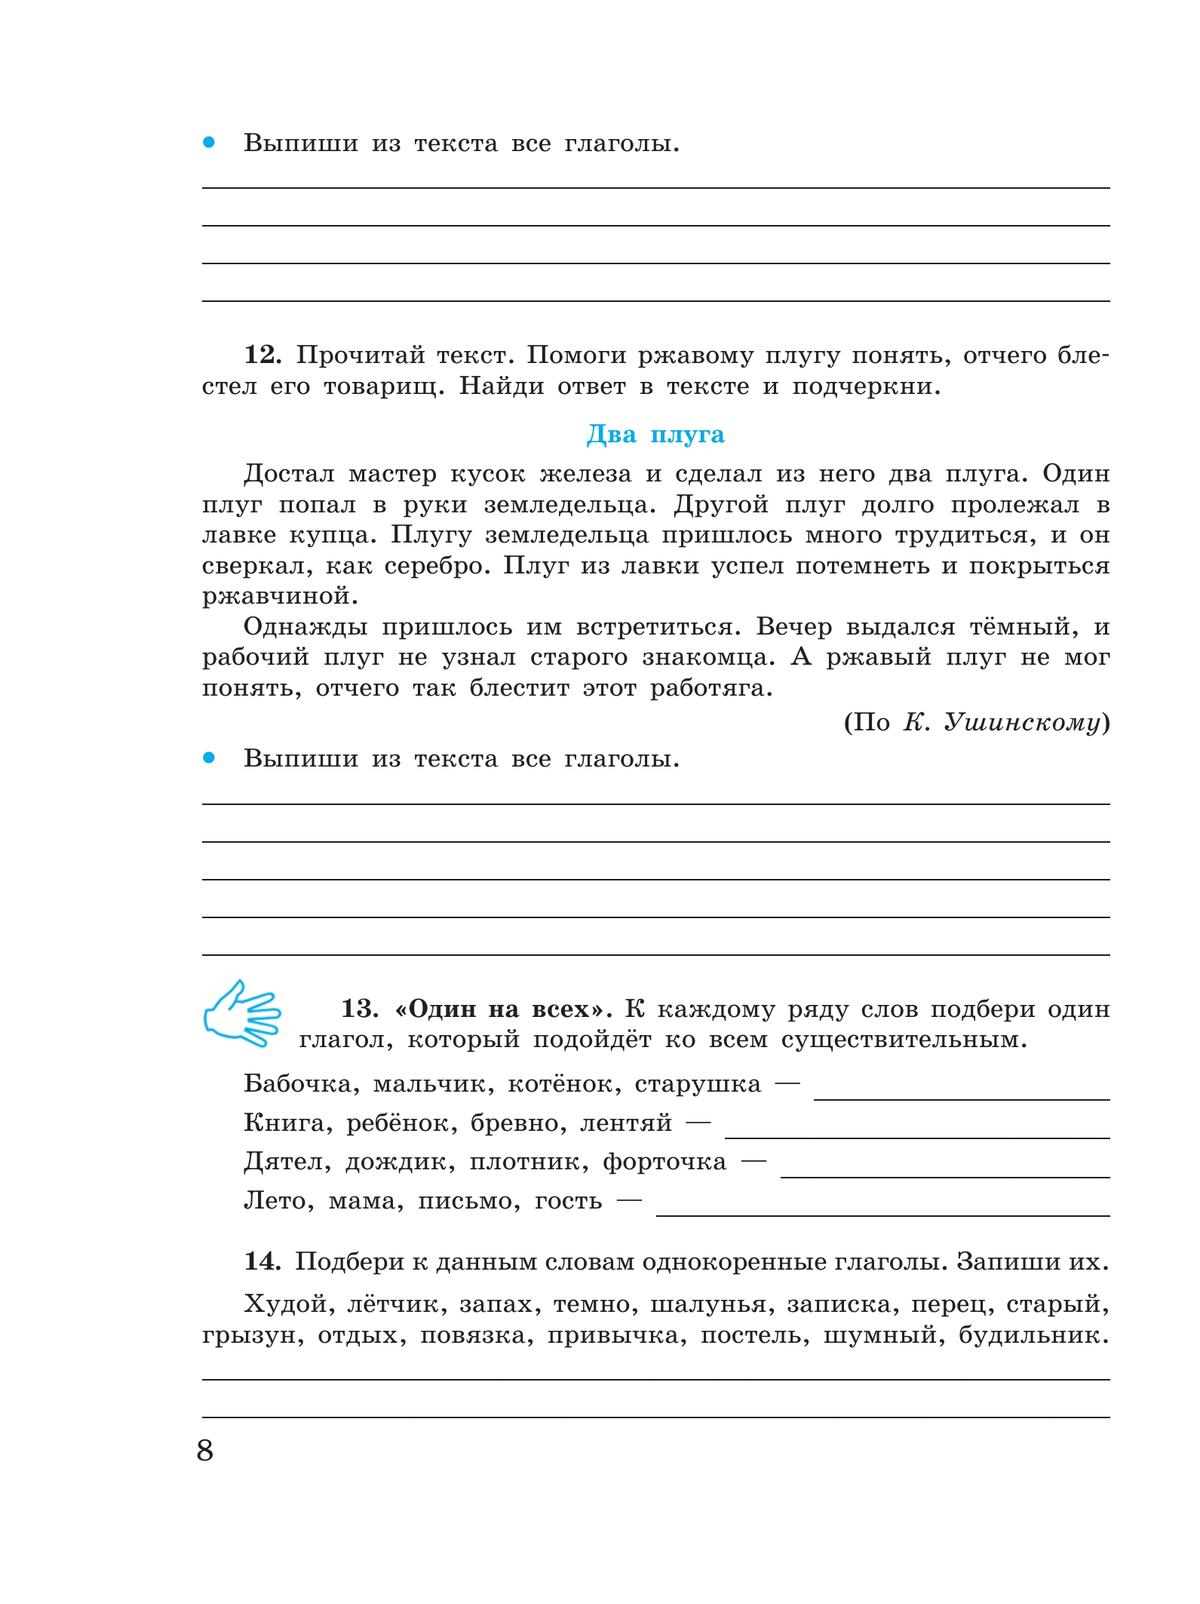 Русский язык. Глагол. 5-9 классы. Рабочая тетрадь 4 (для обучающихся с интеллектуальными нарушениями) 2